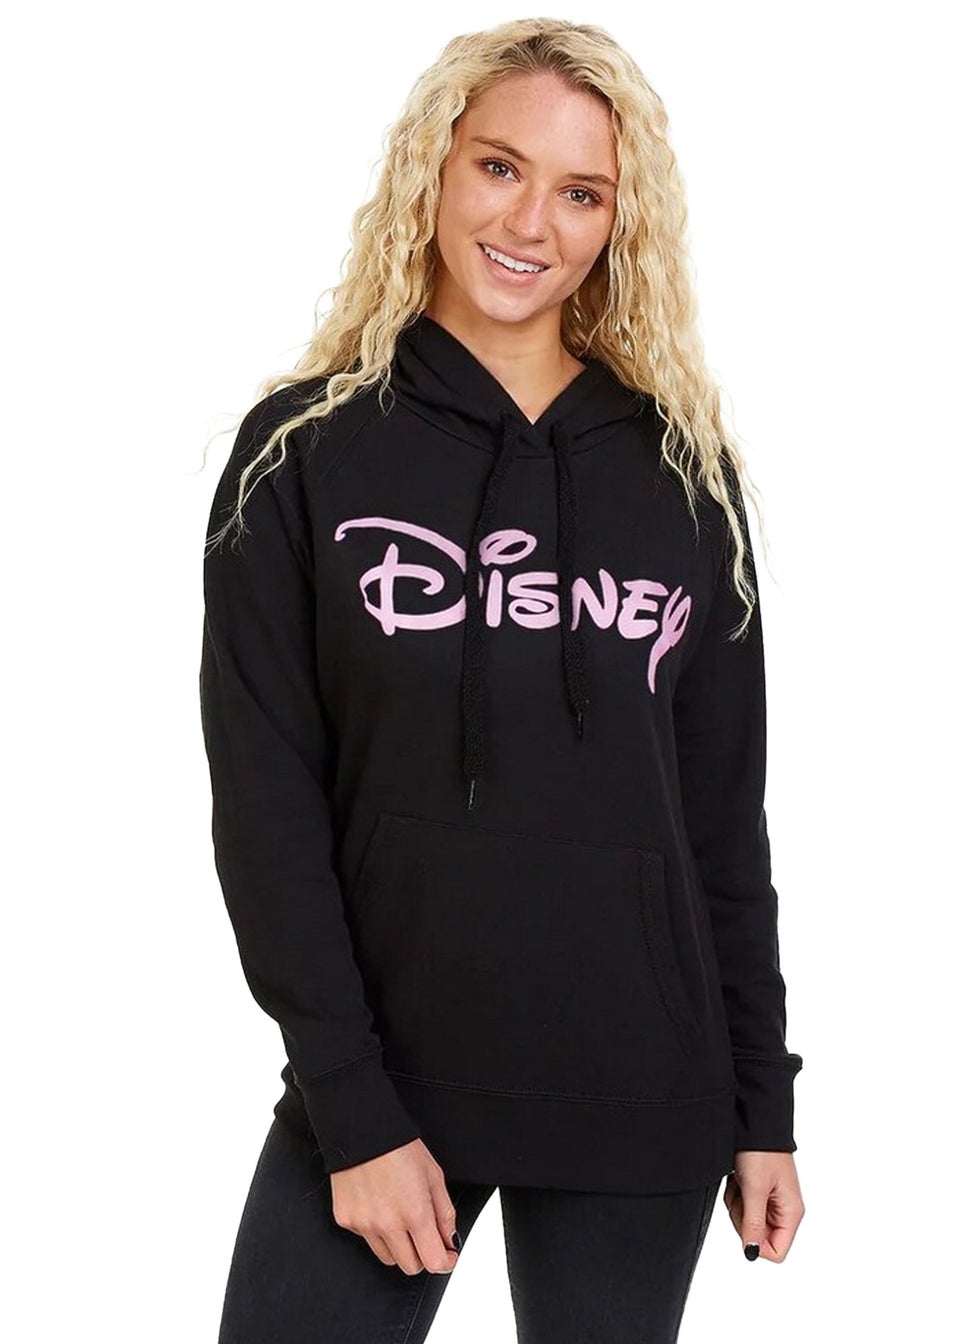 Disney Black Logo Hoodie